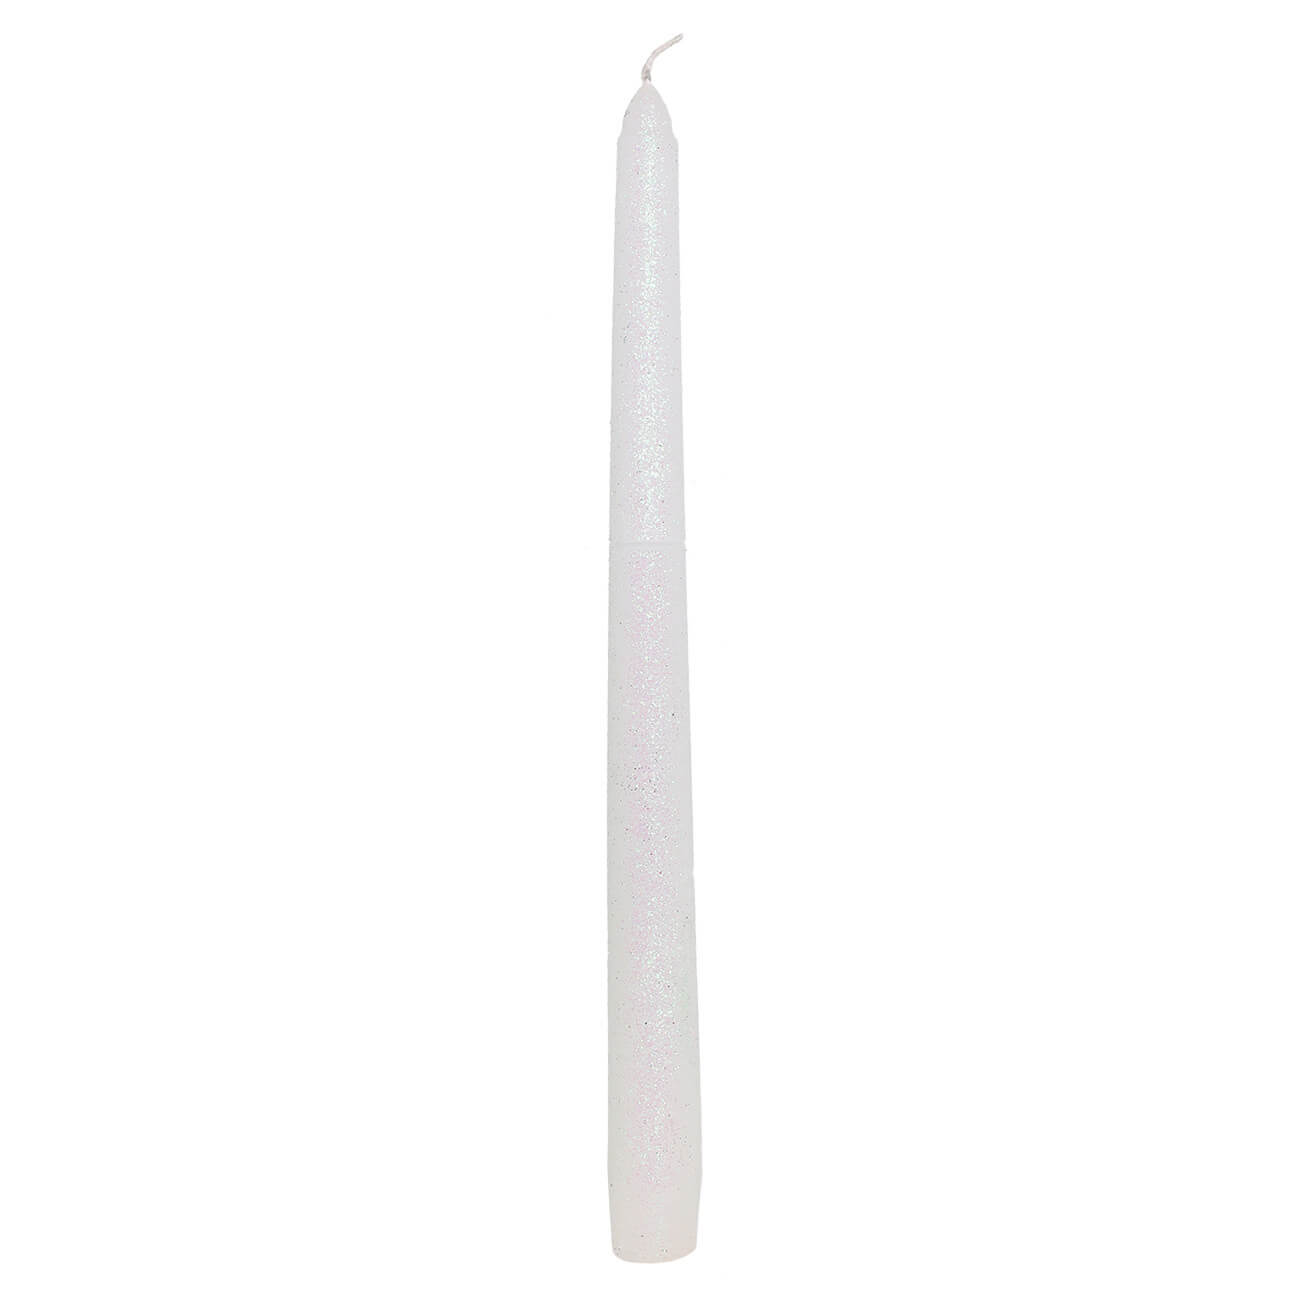 Свеча, 25 см, тонкая, белая, Metallic glow свеча 25 см тонкая белая metallic glow